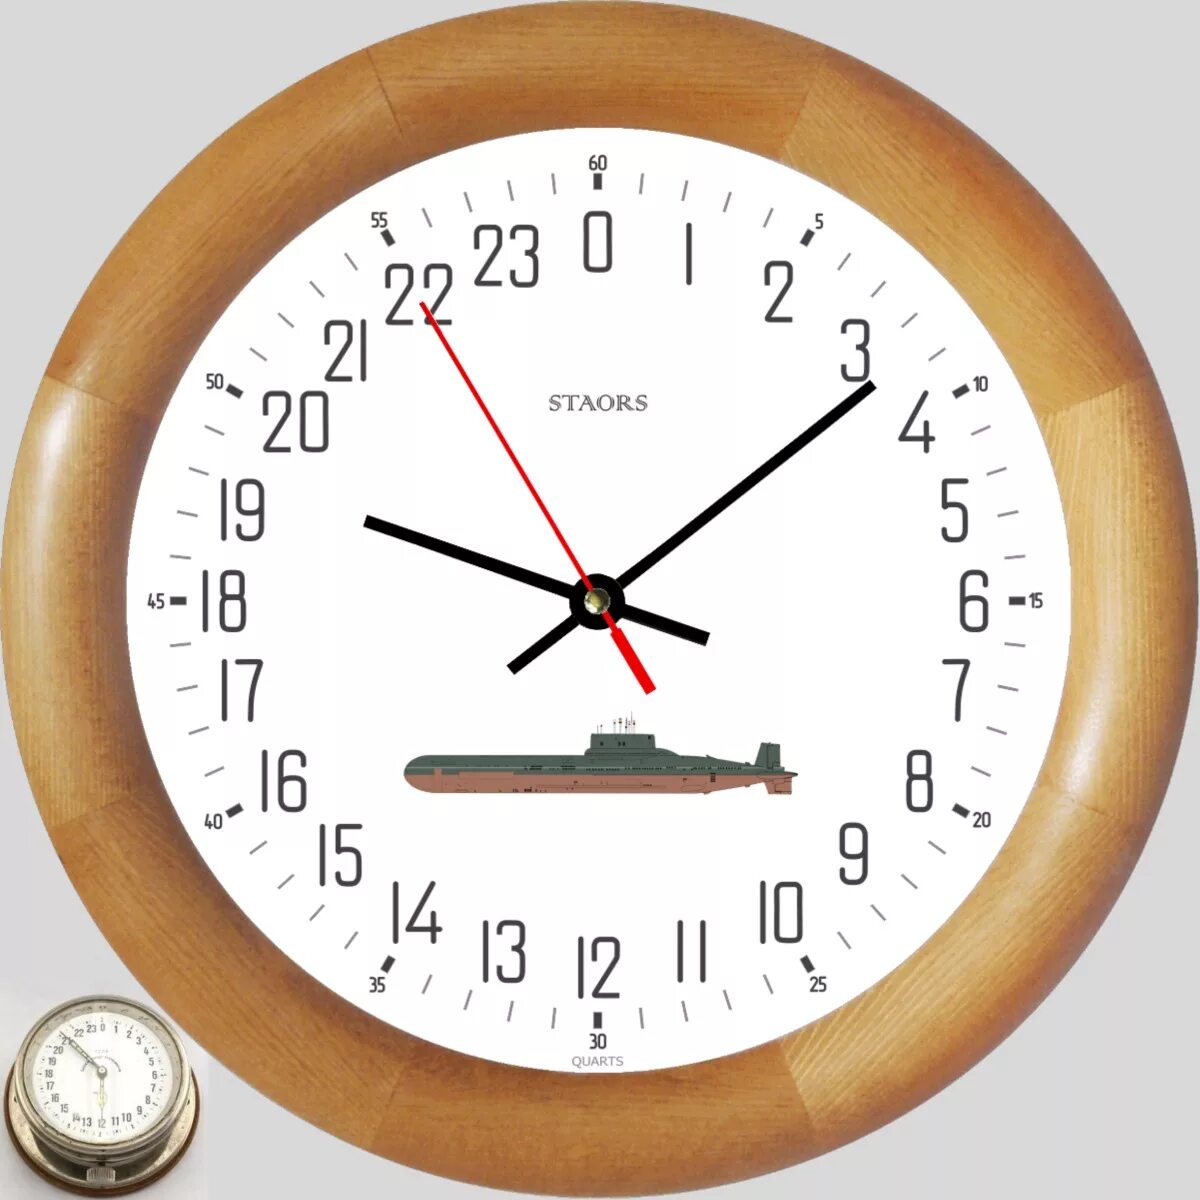 120 часов 12 часов. Часы корабельные, судовые с 24-х часовым циферблатом. Судовые часы с циферблатом на 24 часа. 24 Циферблатные часы. Корабельные часы 24 часа.